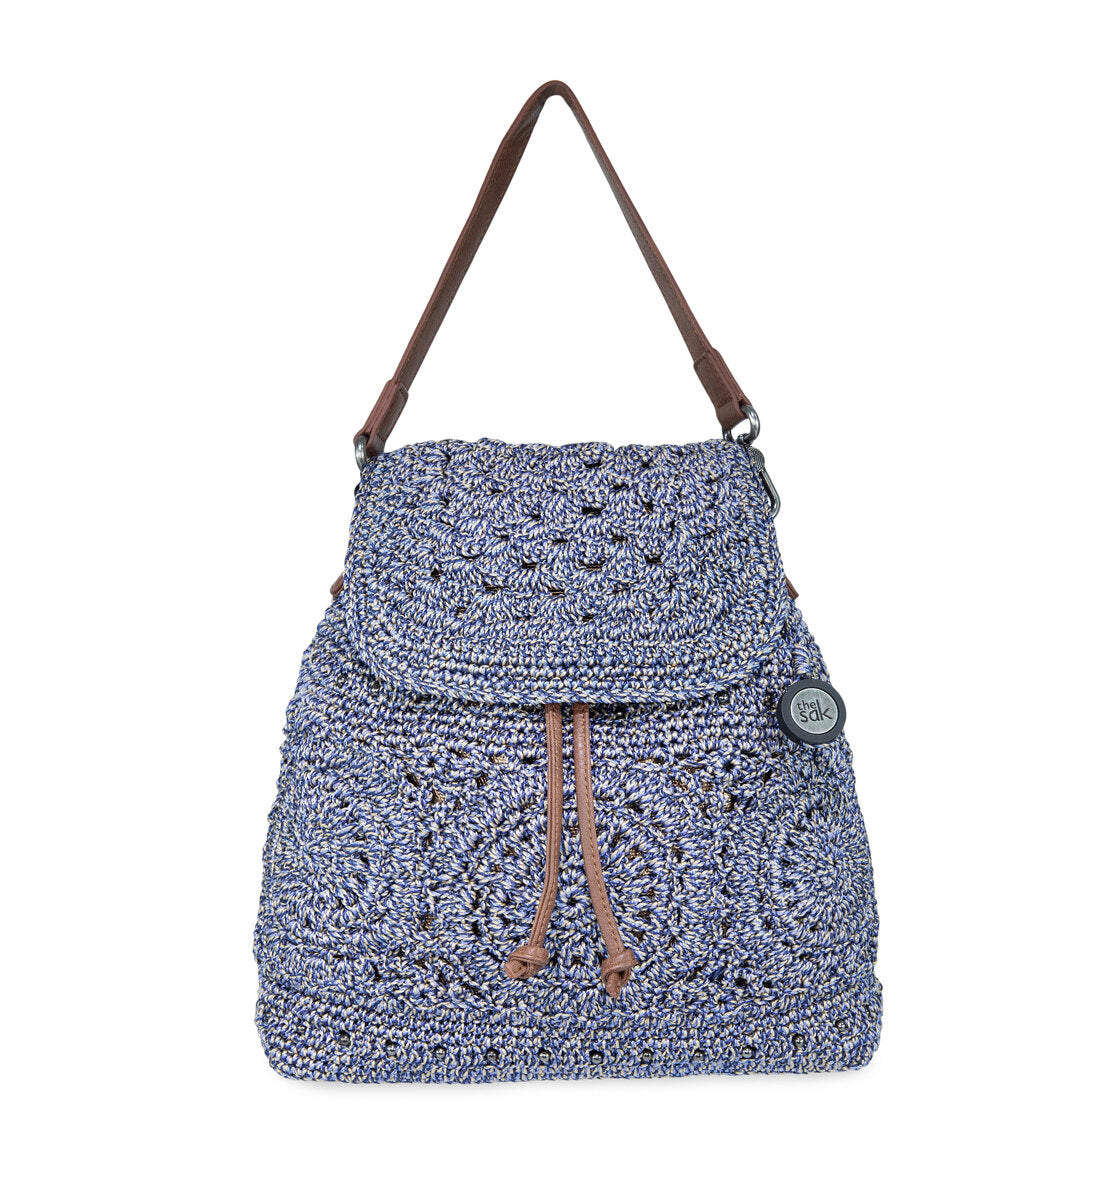 Buy CROCHET PATTERN Backpack Purse Crochet Pattern, Backpack Crochet  Pattern Crossbody Purse Crochet Pattern, Backpack Crochet Pattern Online in  India - Etsy